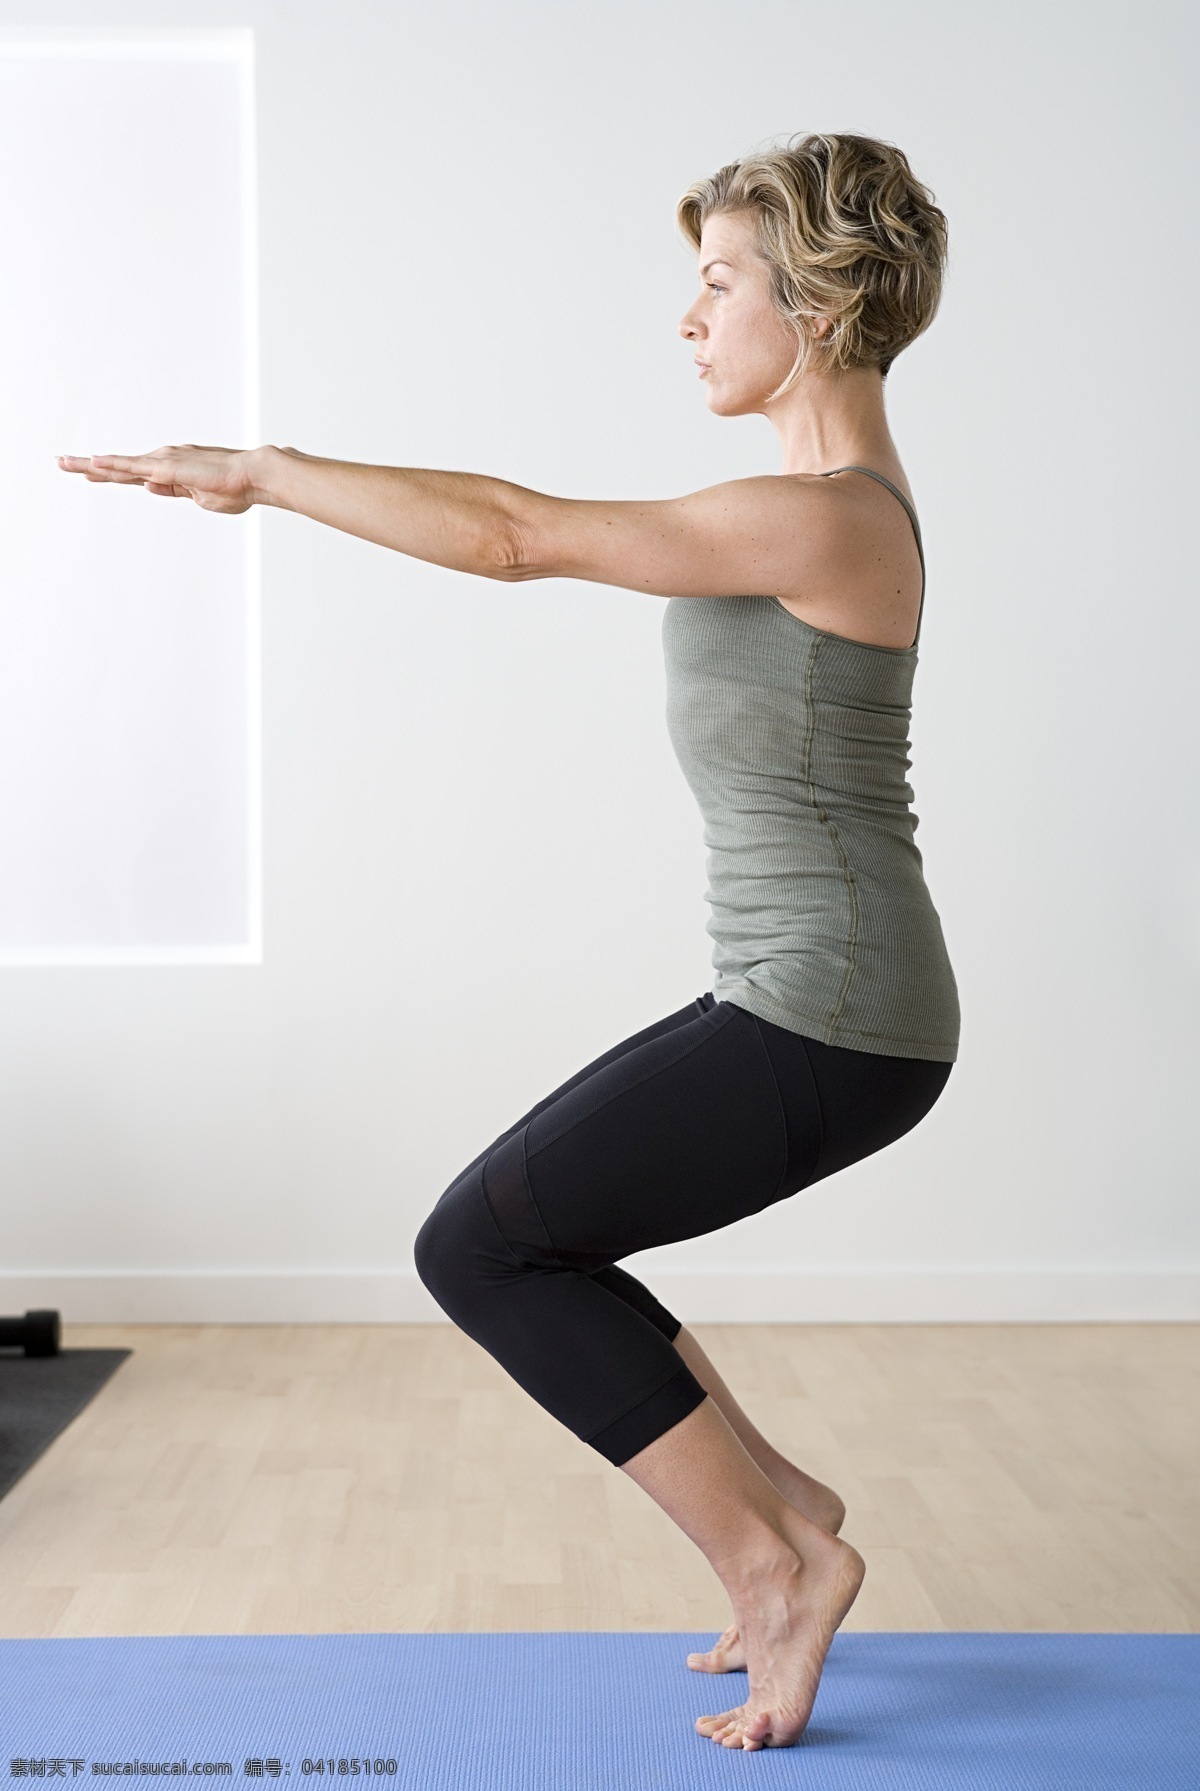 练 瑜伽 女性 健身女性 外国女性 健身房 健身 有氧运动 生活人物 人物图片